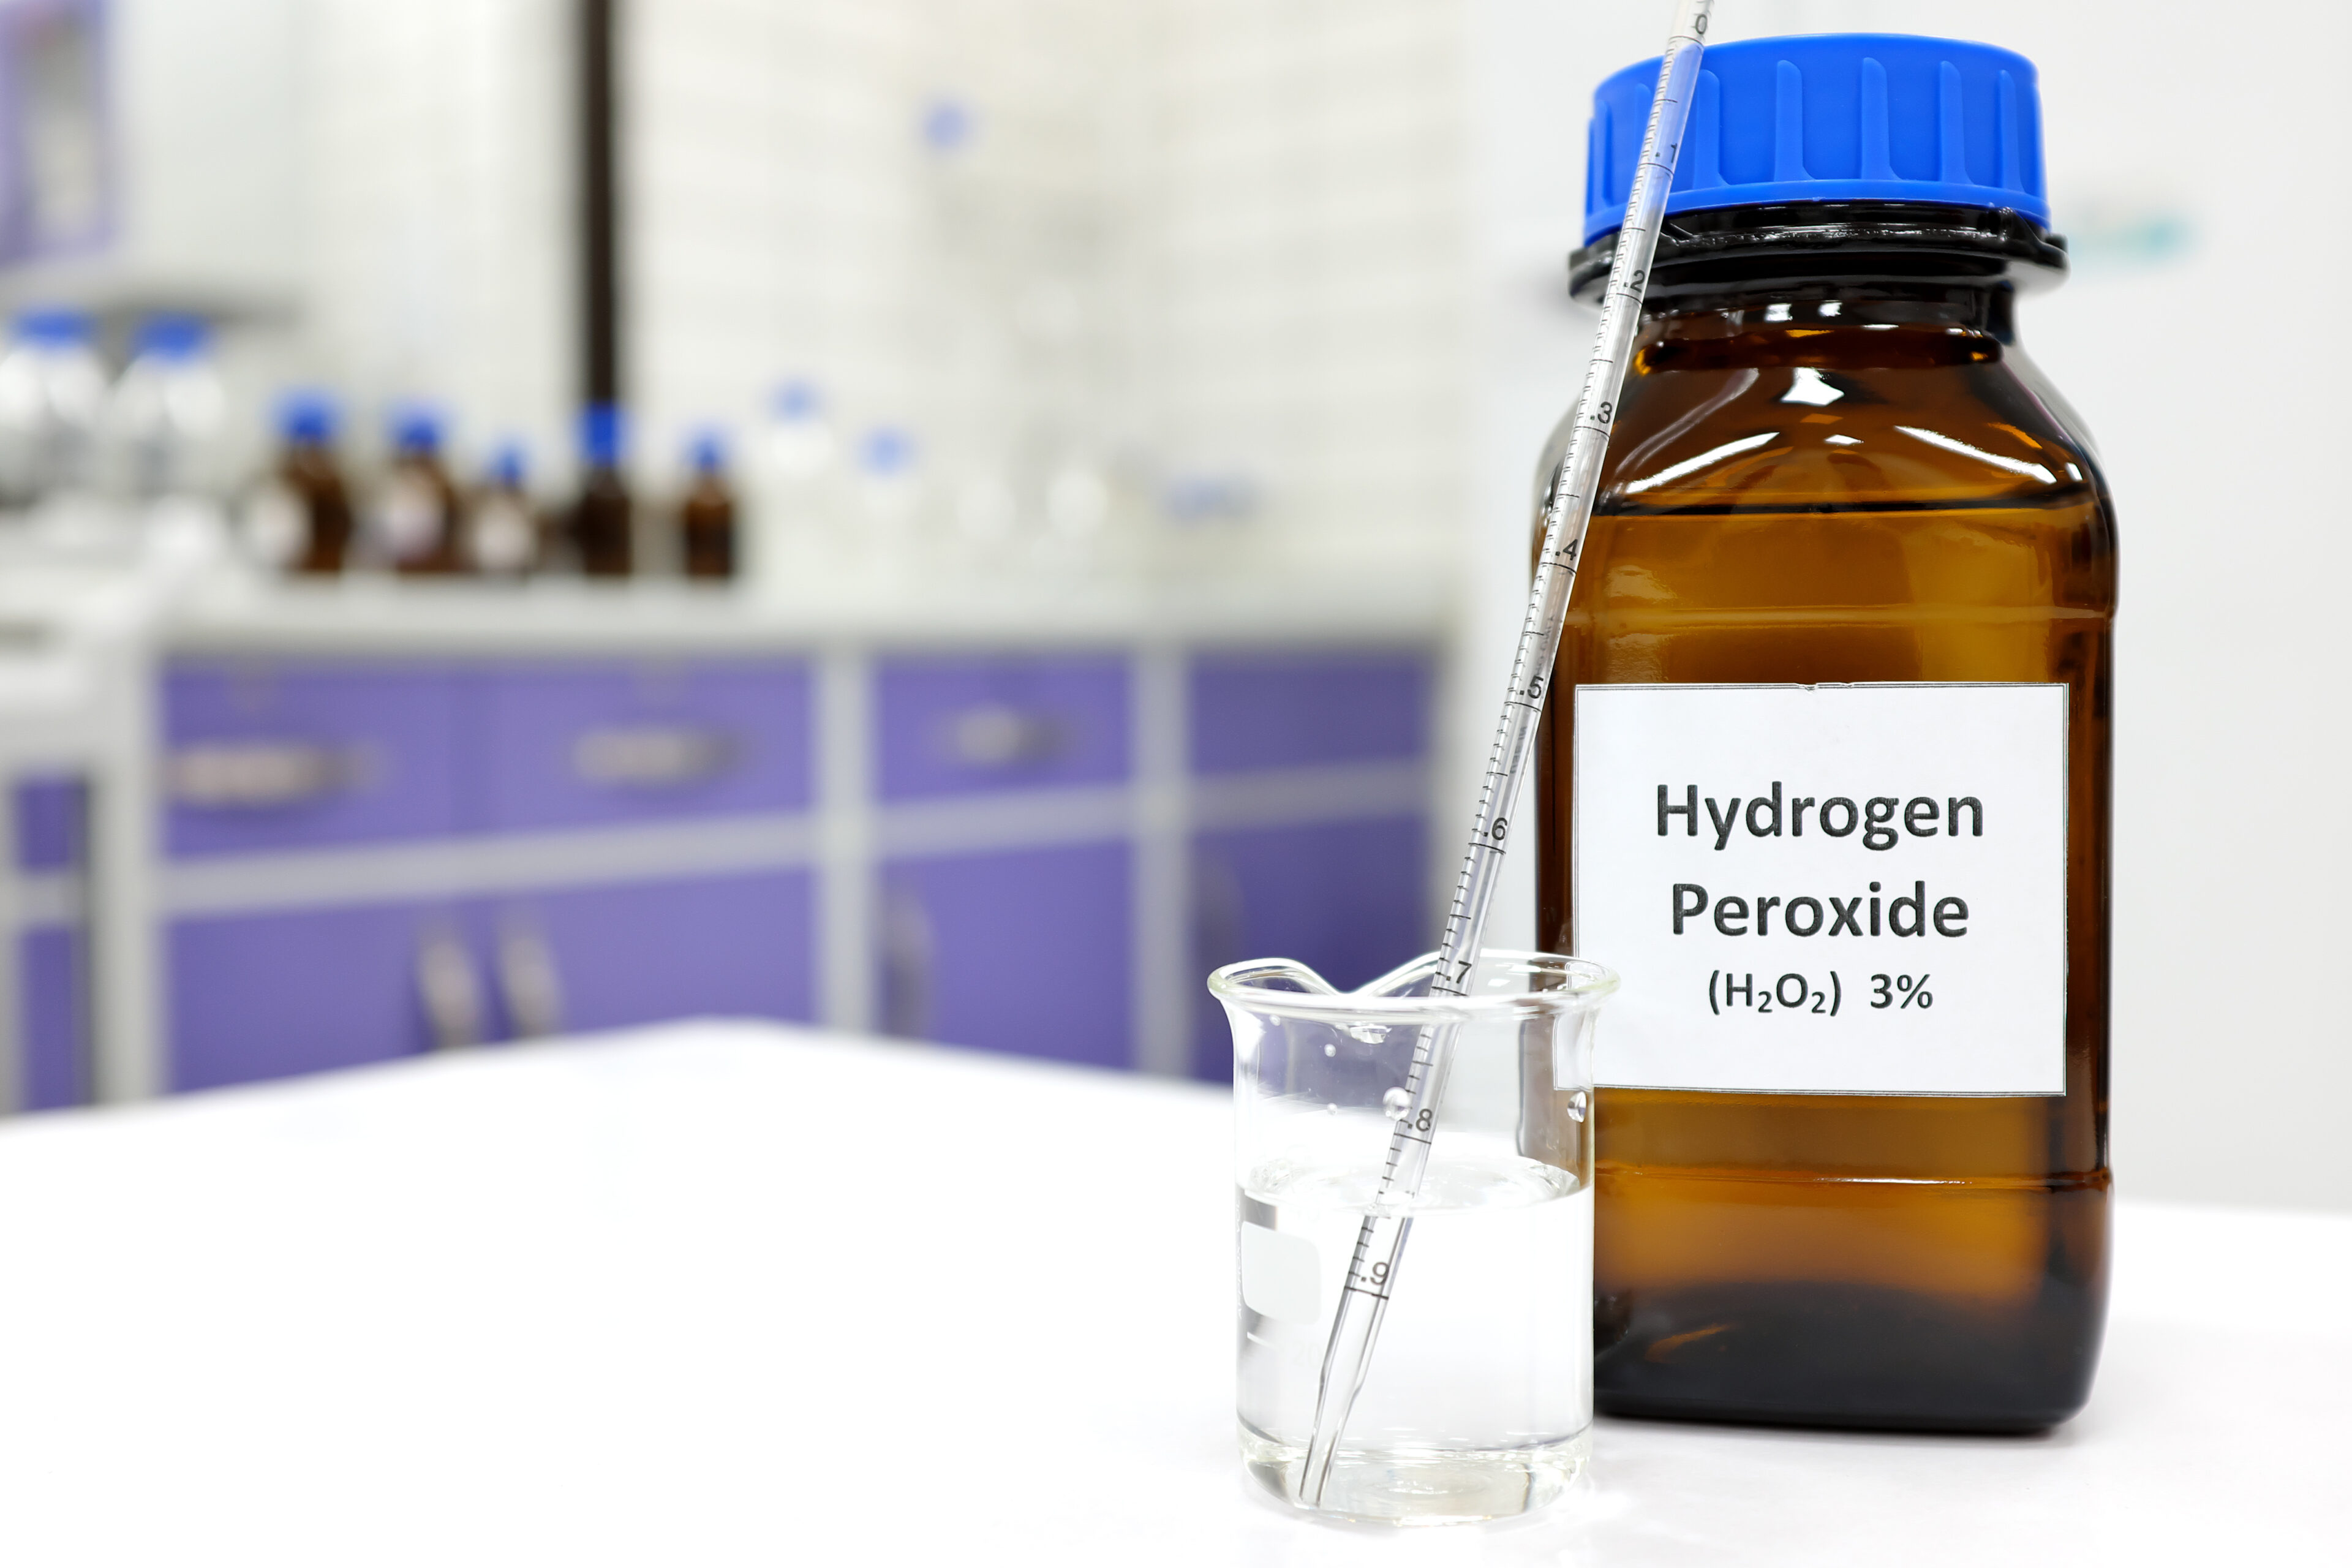 Hydrogen peroxide: A last resort